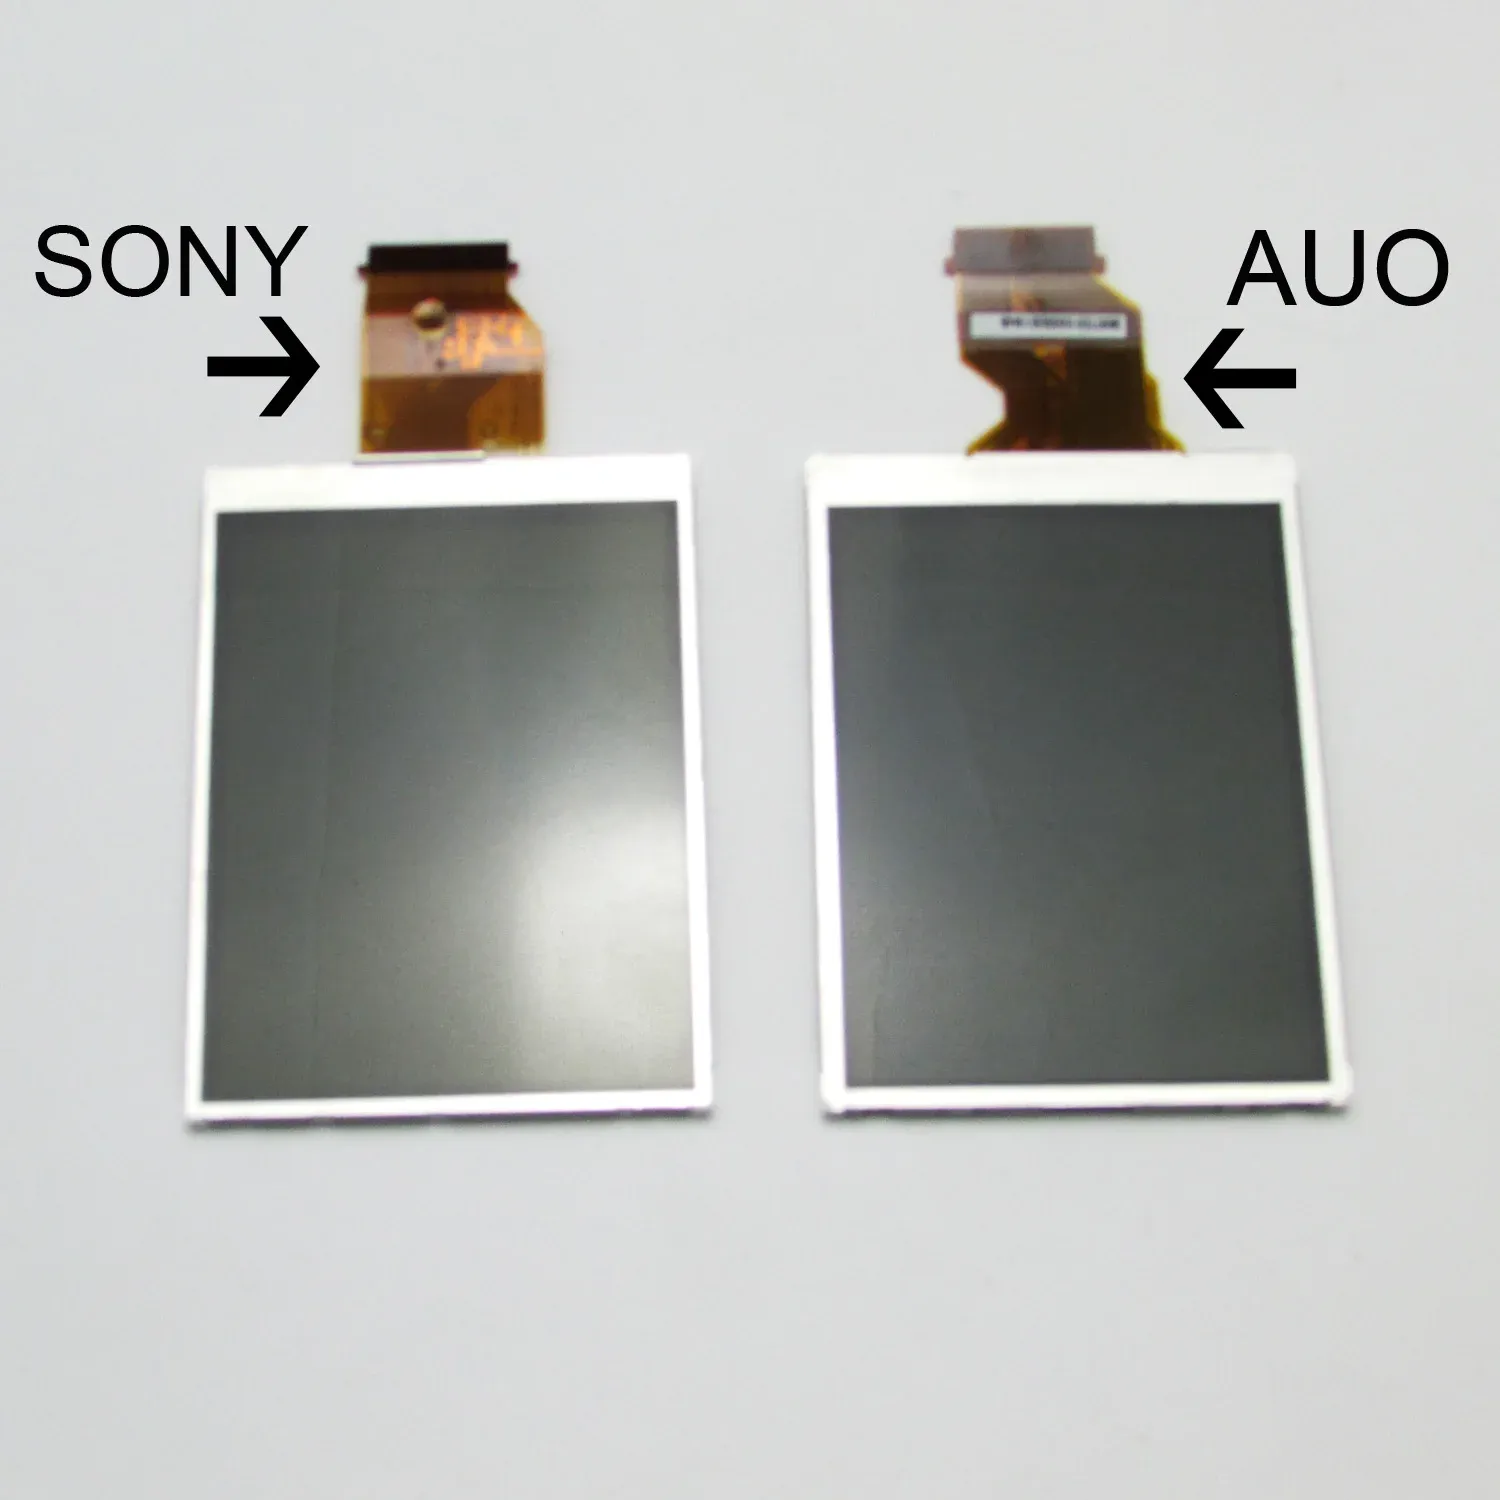 Accessoires Nouvel écran LCD Affichage pour Sony Alpha DSLR A200 A300 A350 Caméra (type AUO / Sony) + rétro-éclairage